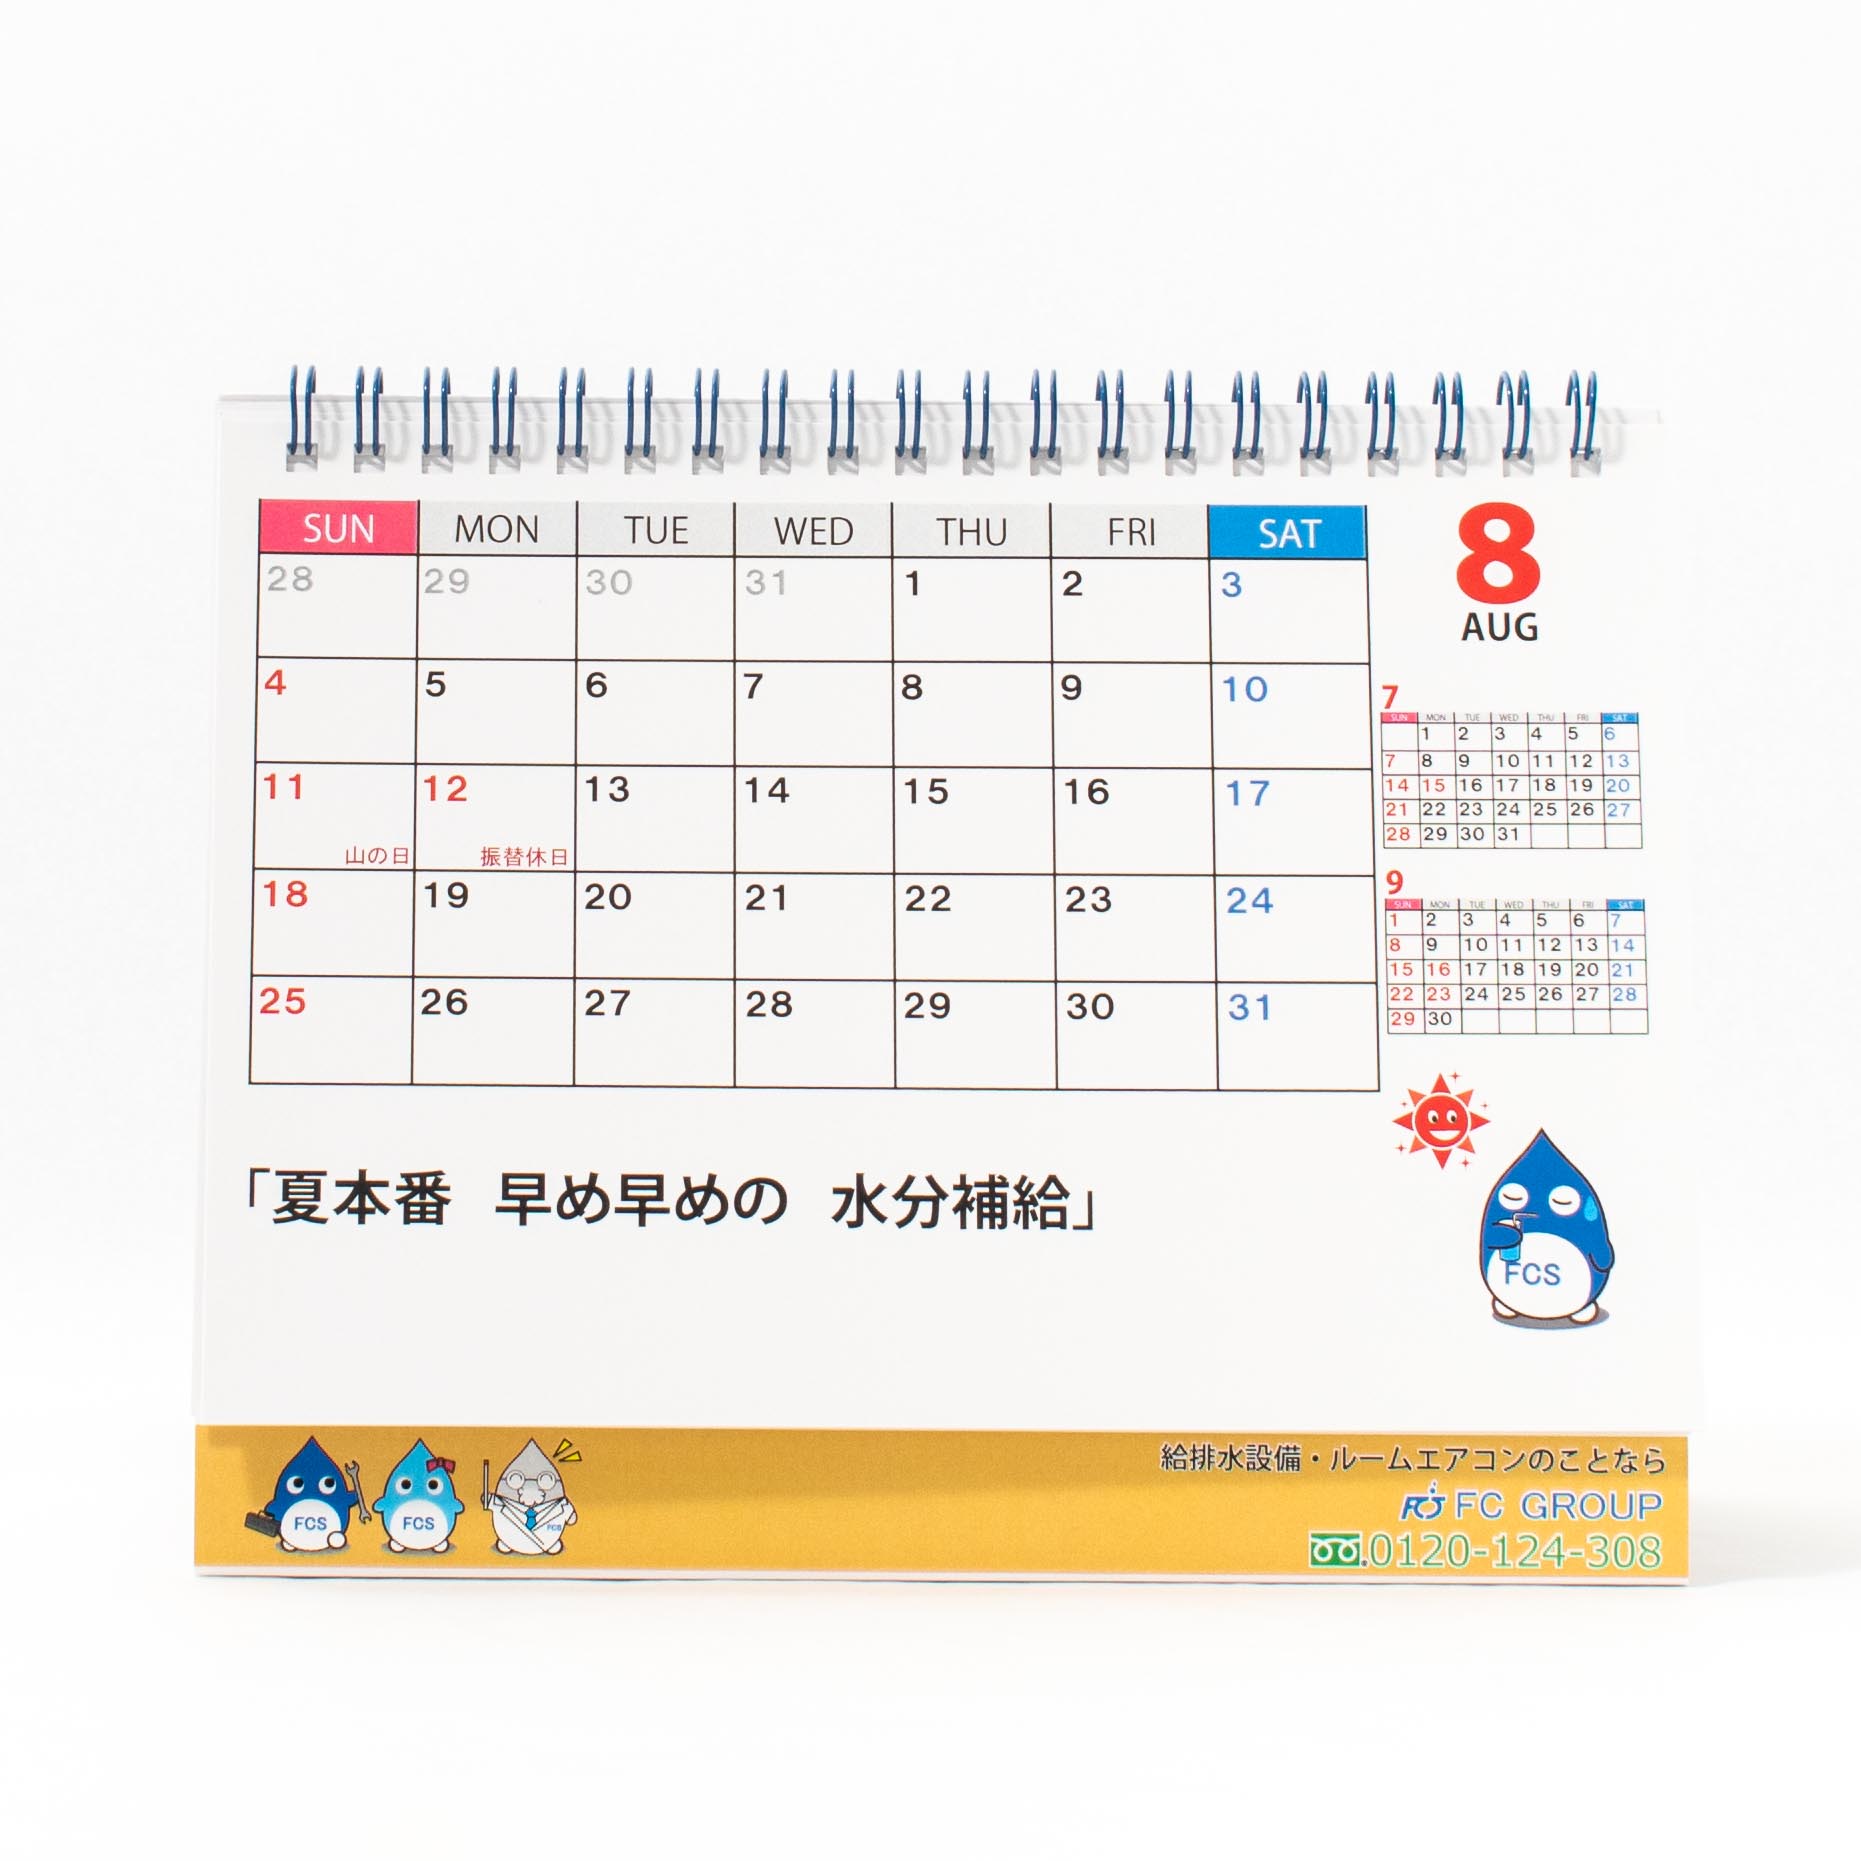 「ＦＣサポート株式会社 様」製作のオリジナルカレンダー ギャラリー写真1